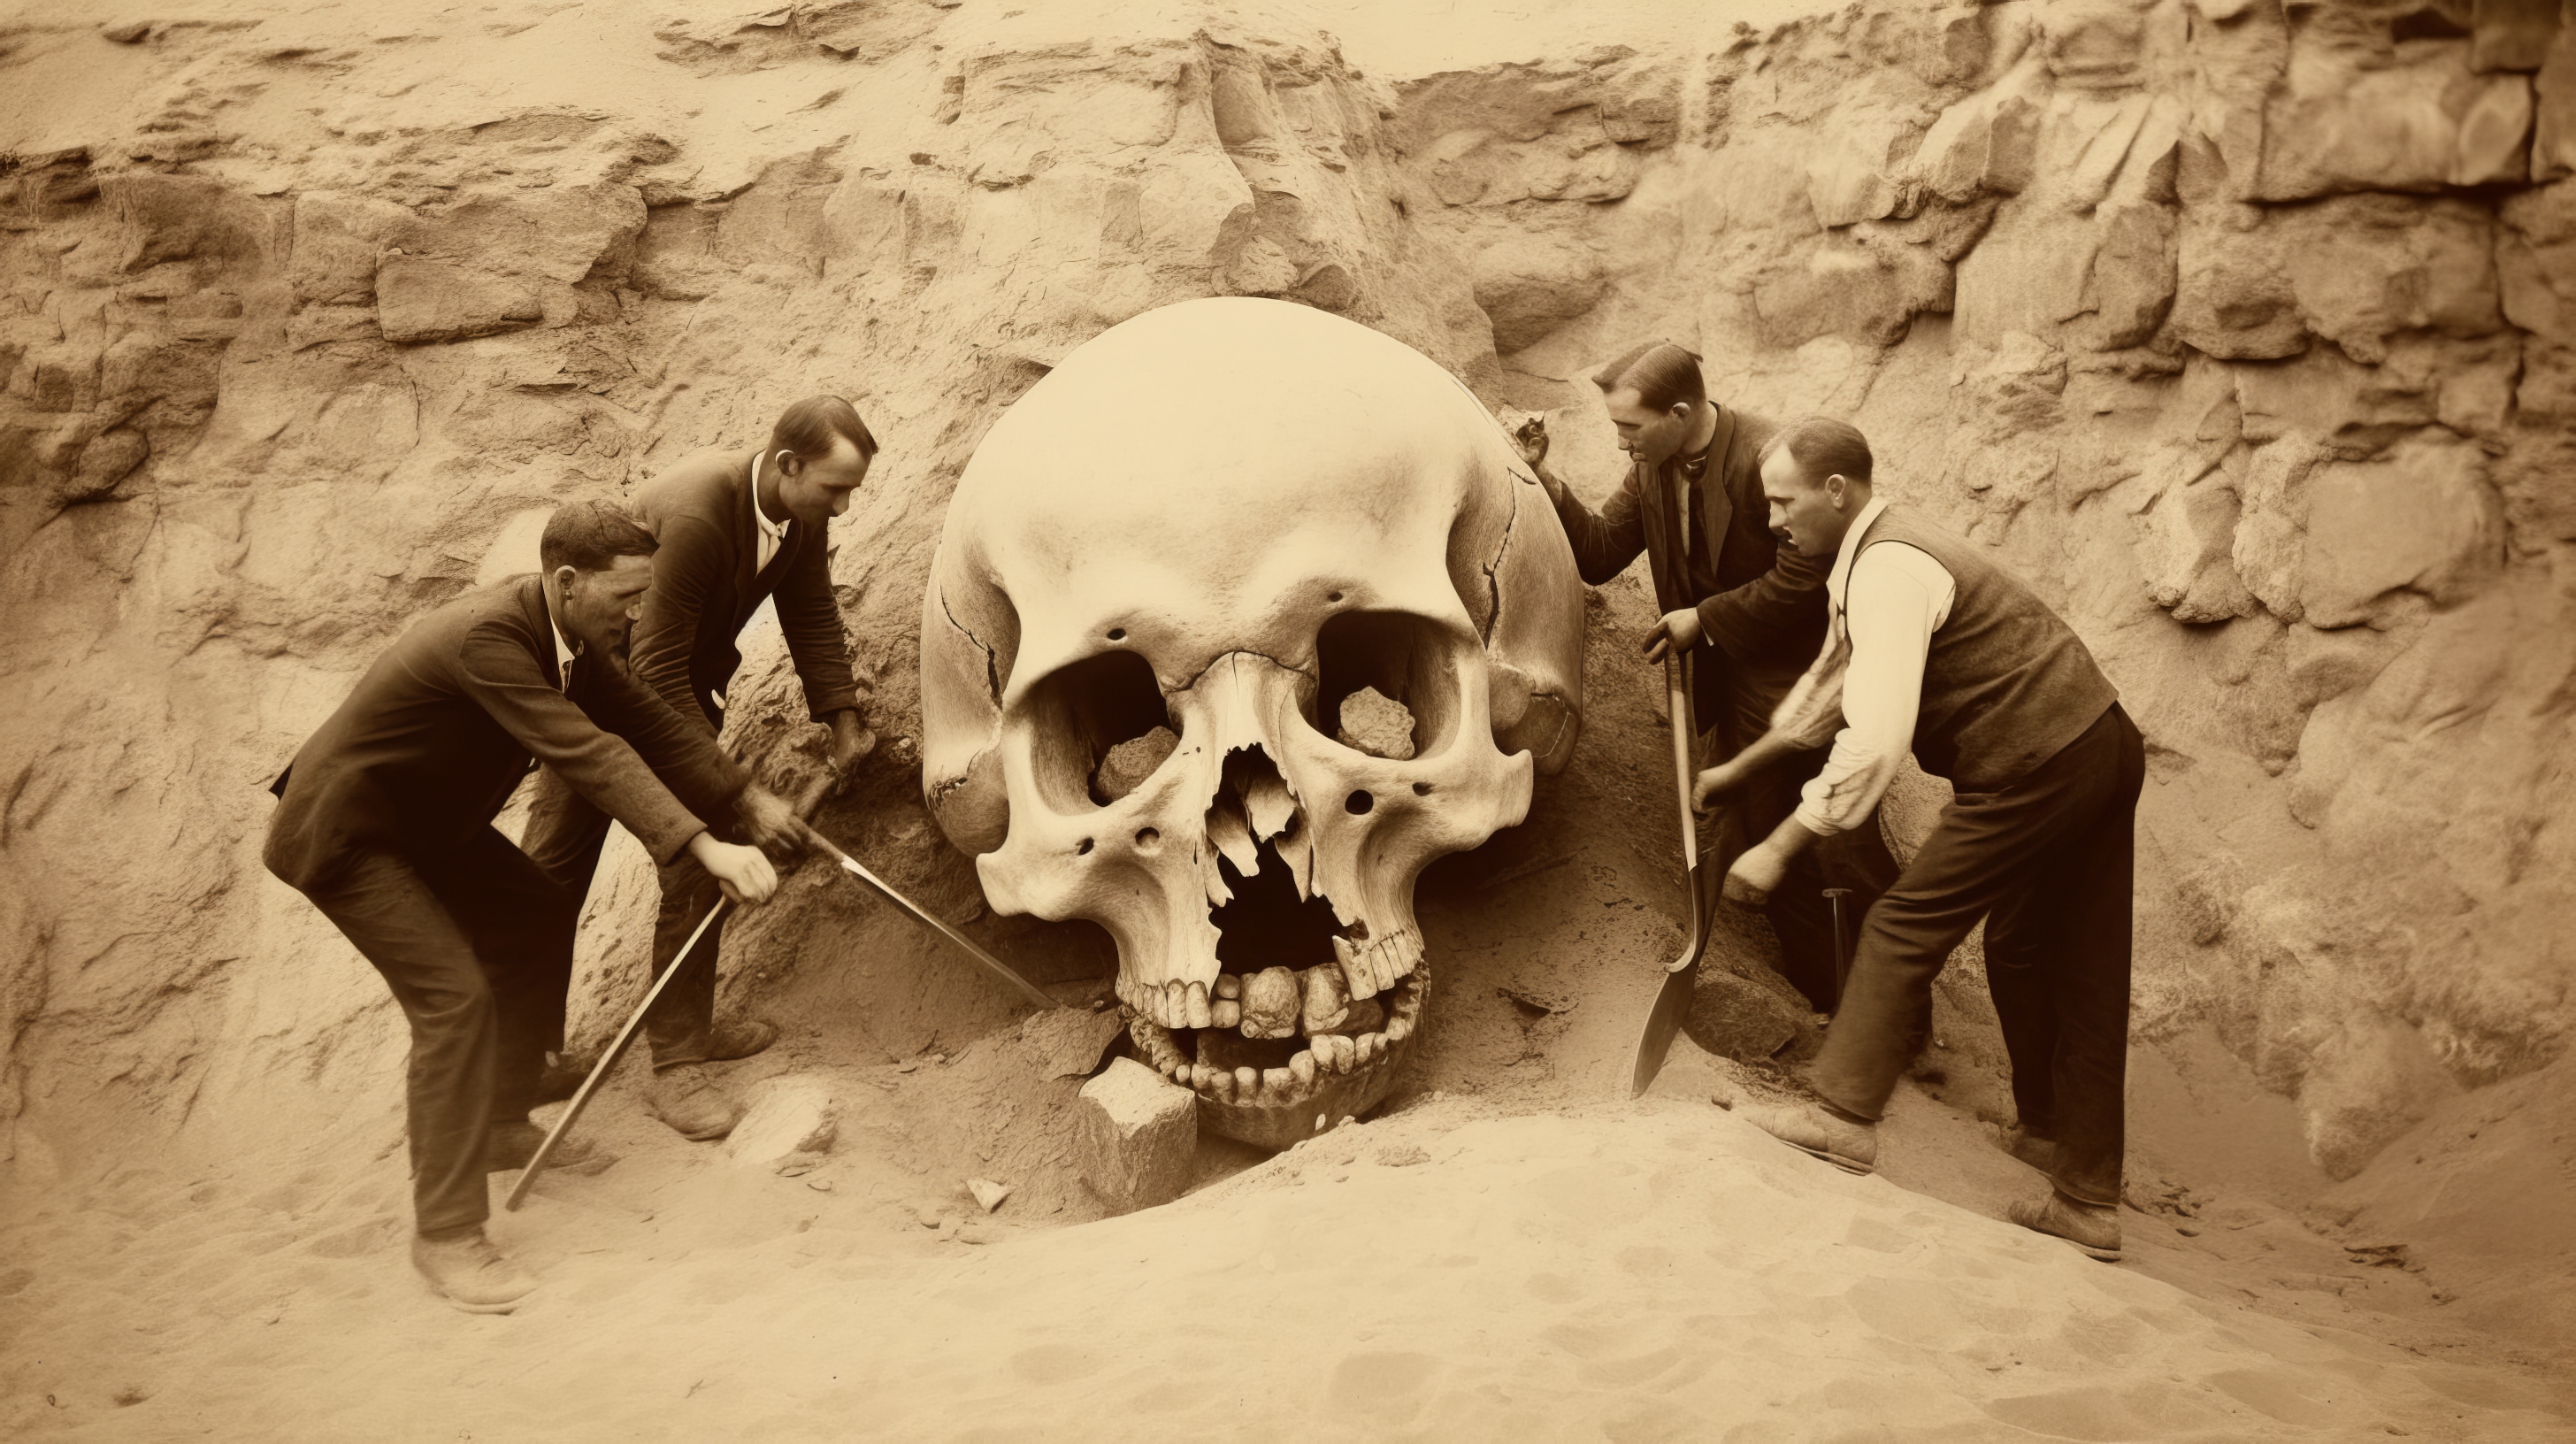 General 2912x1632 AI art giant skull digging sepia suits shovels men